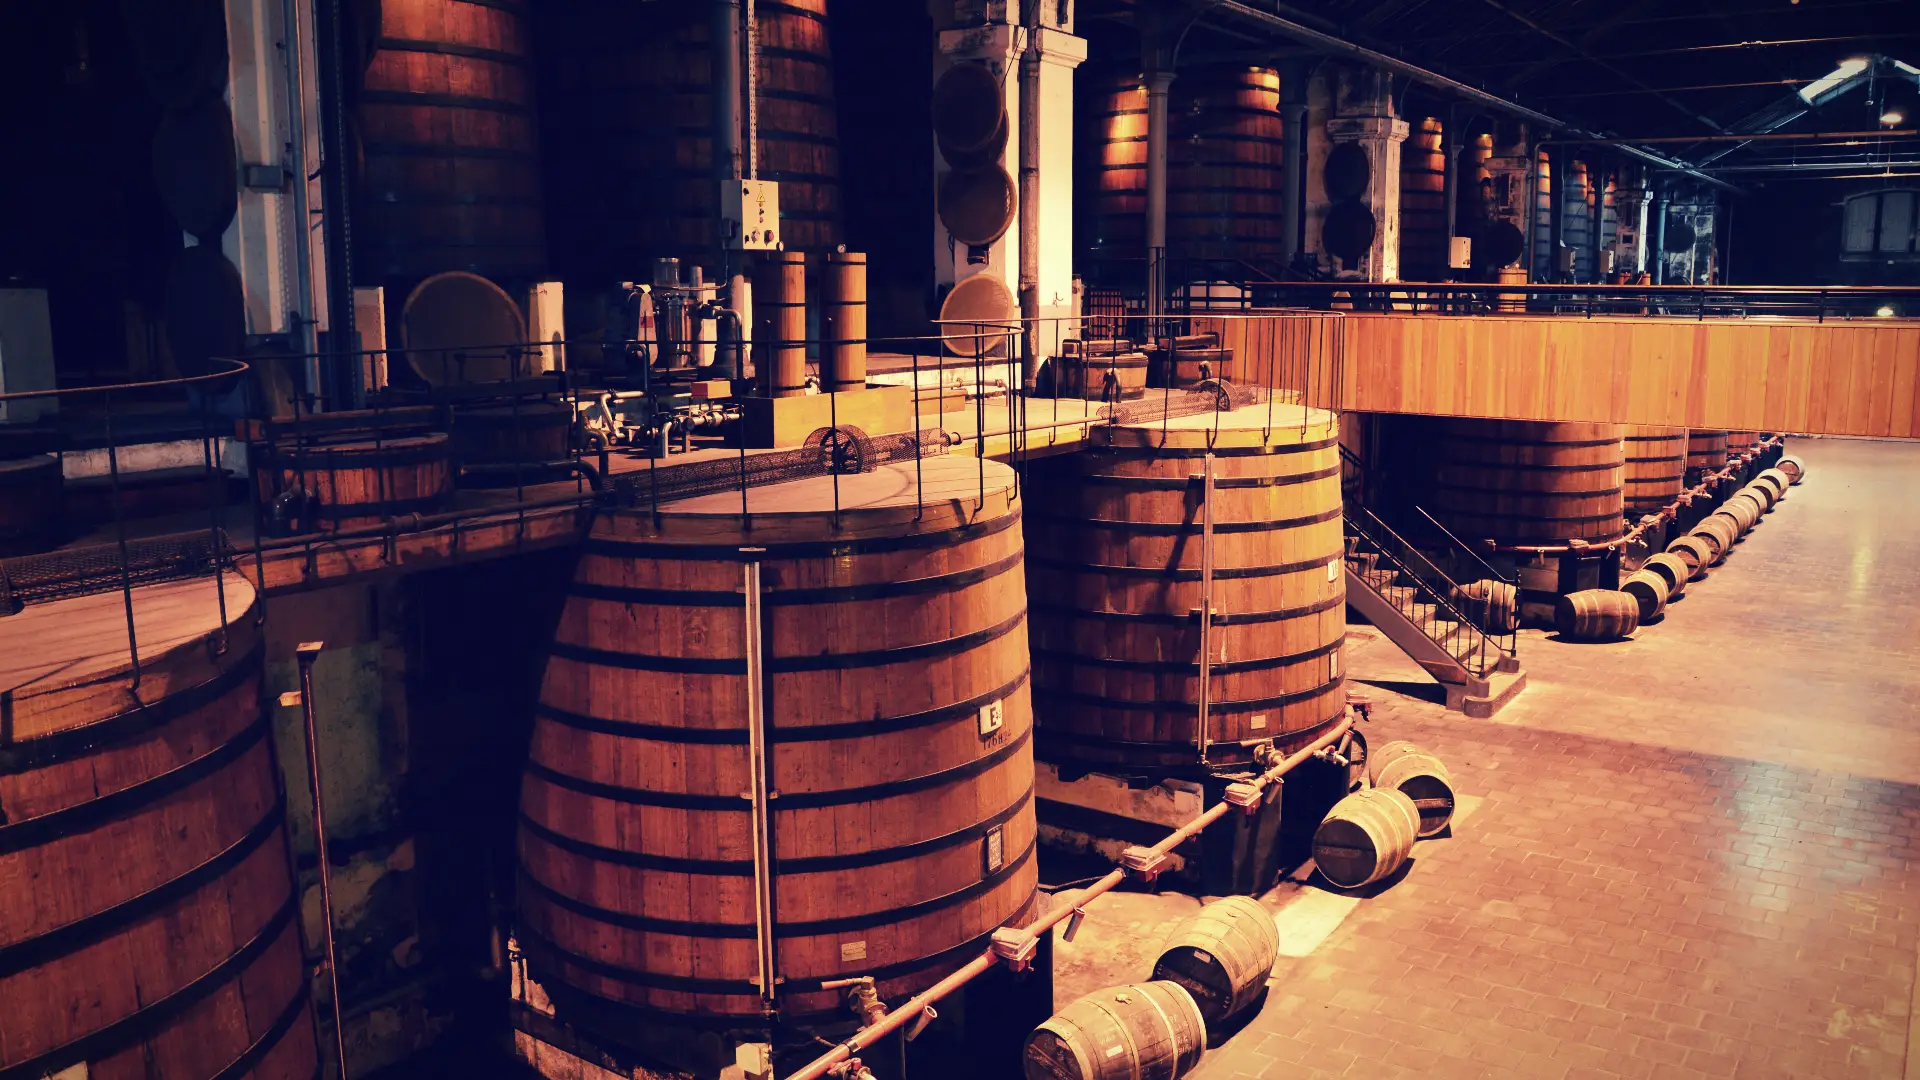 Martell distillery